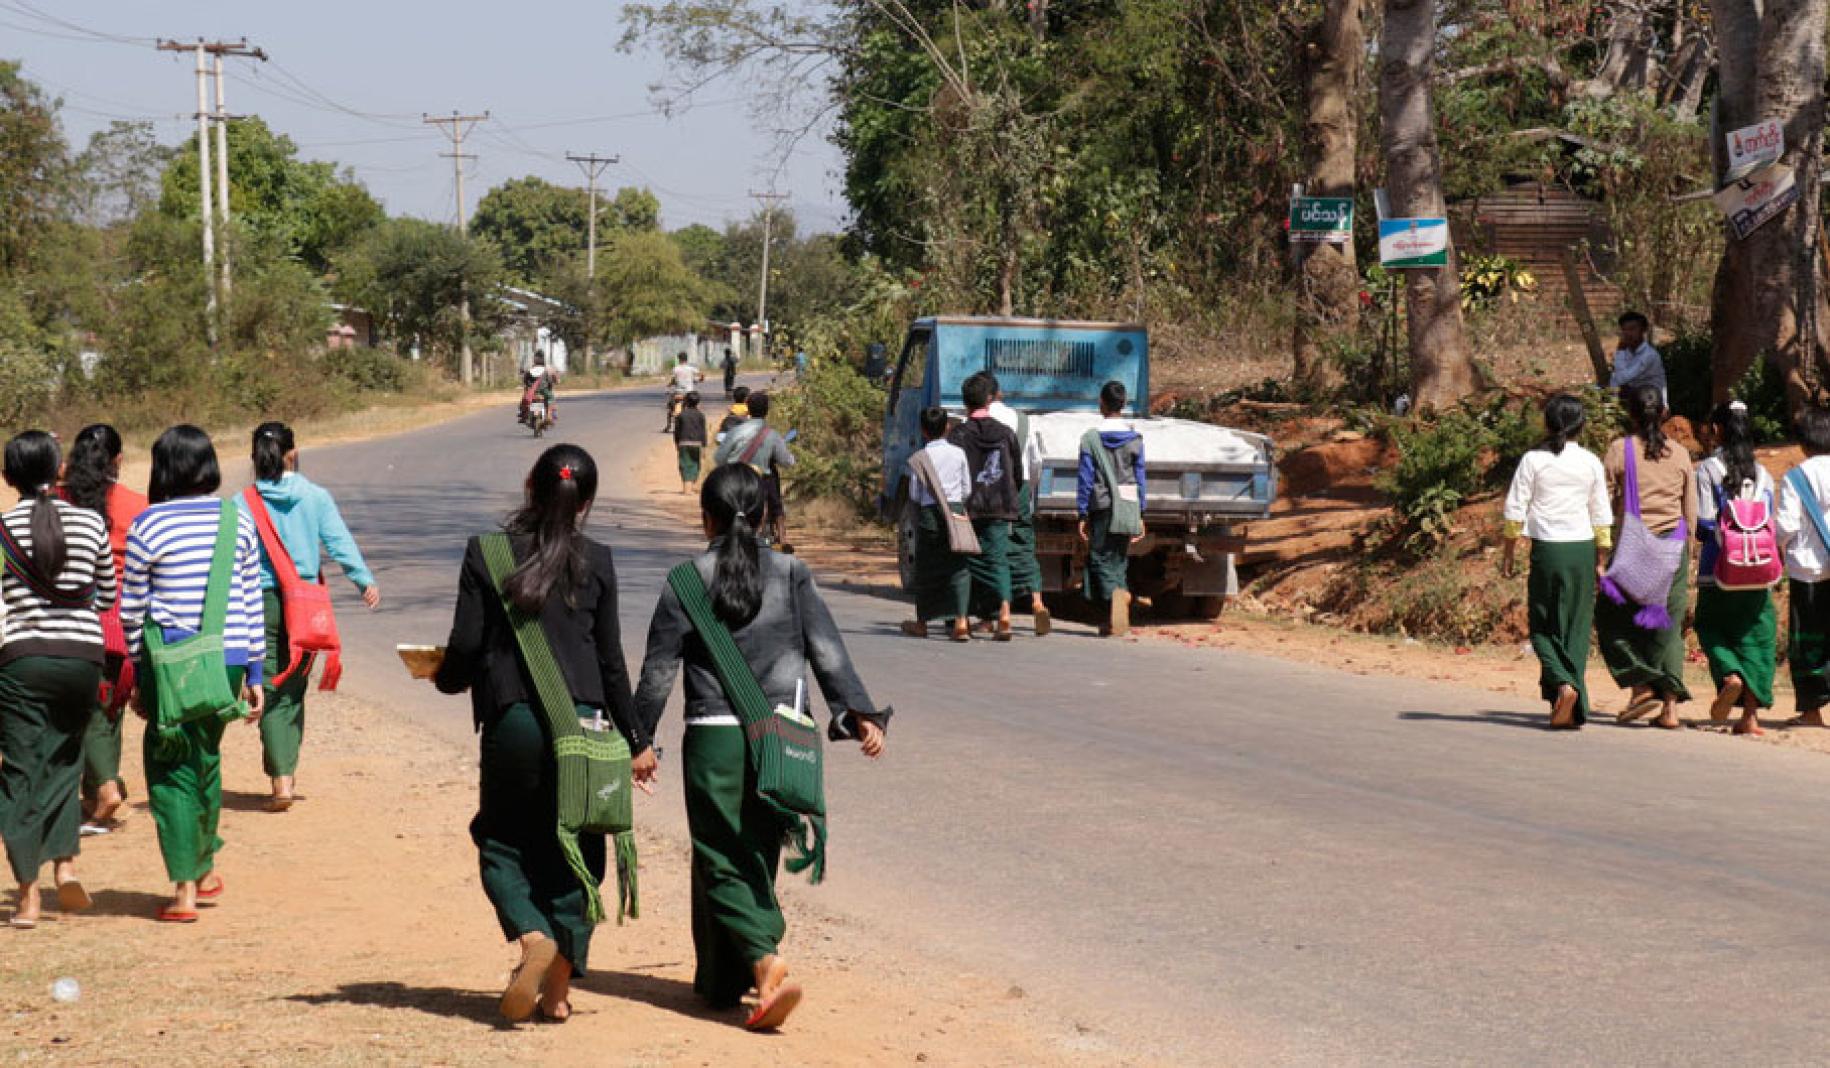 Alumnos caminando en grupo por el hombrillo de tierra de una carretera, en dirección a la escuela.